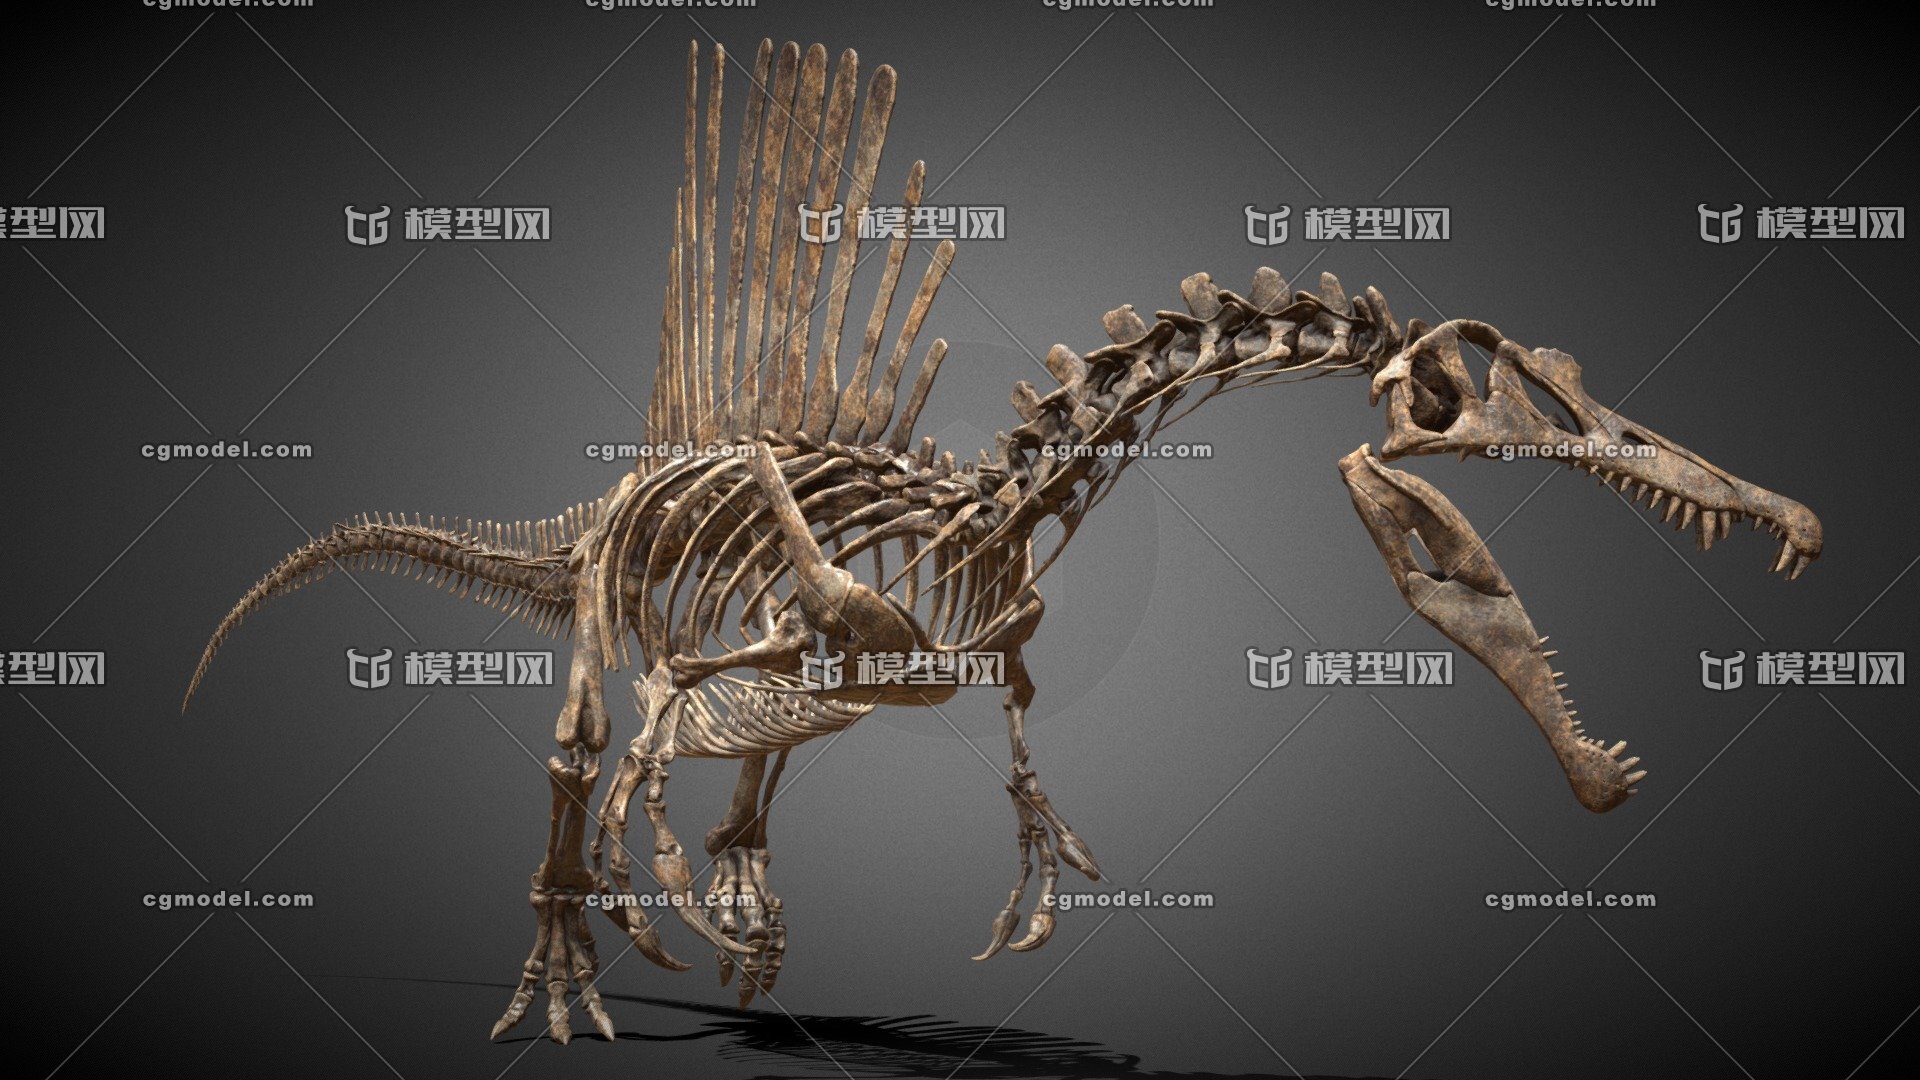 查干诺儿龙-恐龙-图片